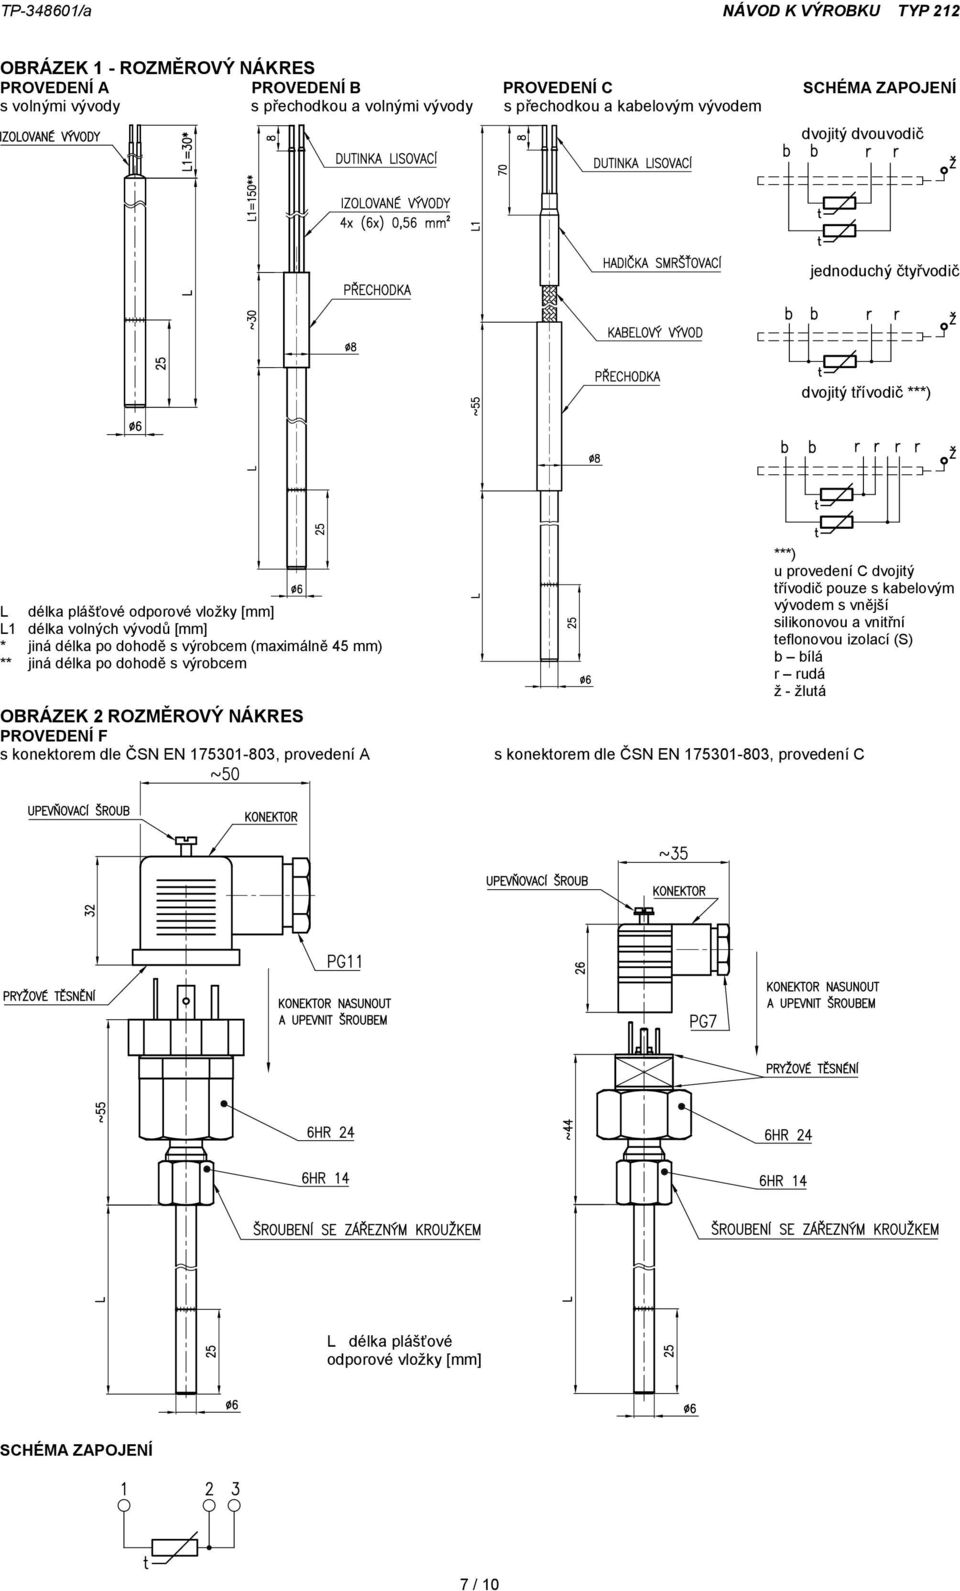 jiná délka po dohodě s výrobcem OBRÁZEK 2 ROZMĚROVÝ NÁKRES PROVEDENÍ F s konektorem dle ČSN EN 175301-803, provedení A ***) u provedení C dvojitý třívodič pouze s kabelovým